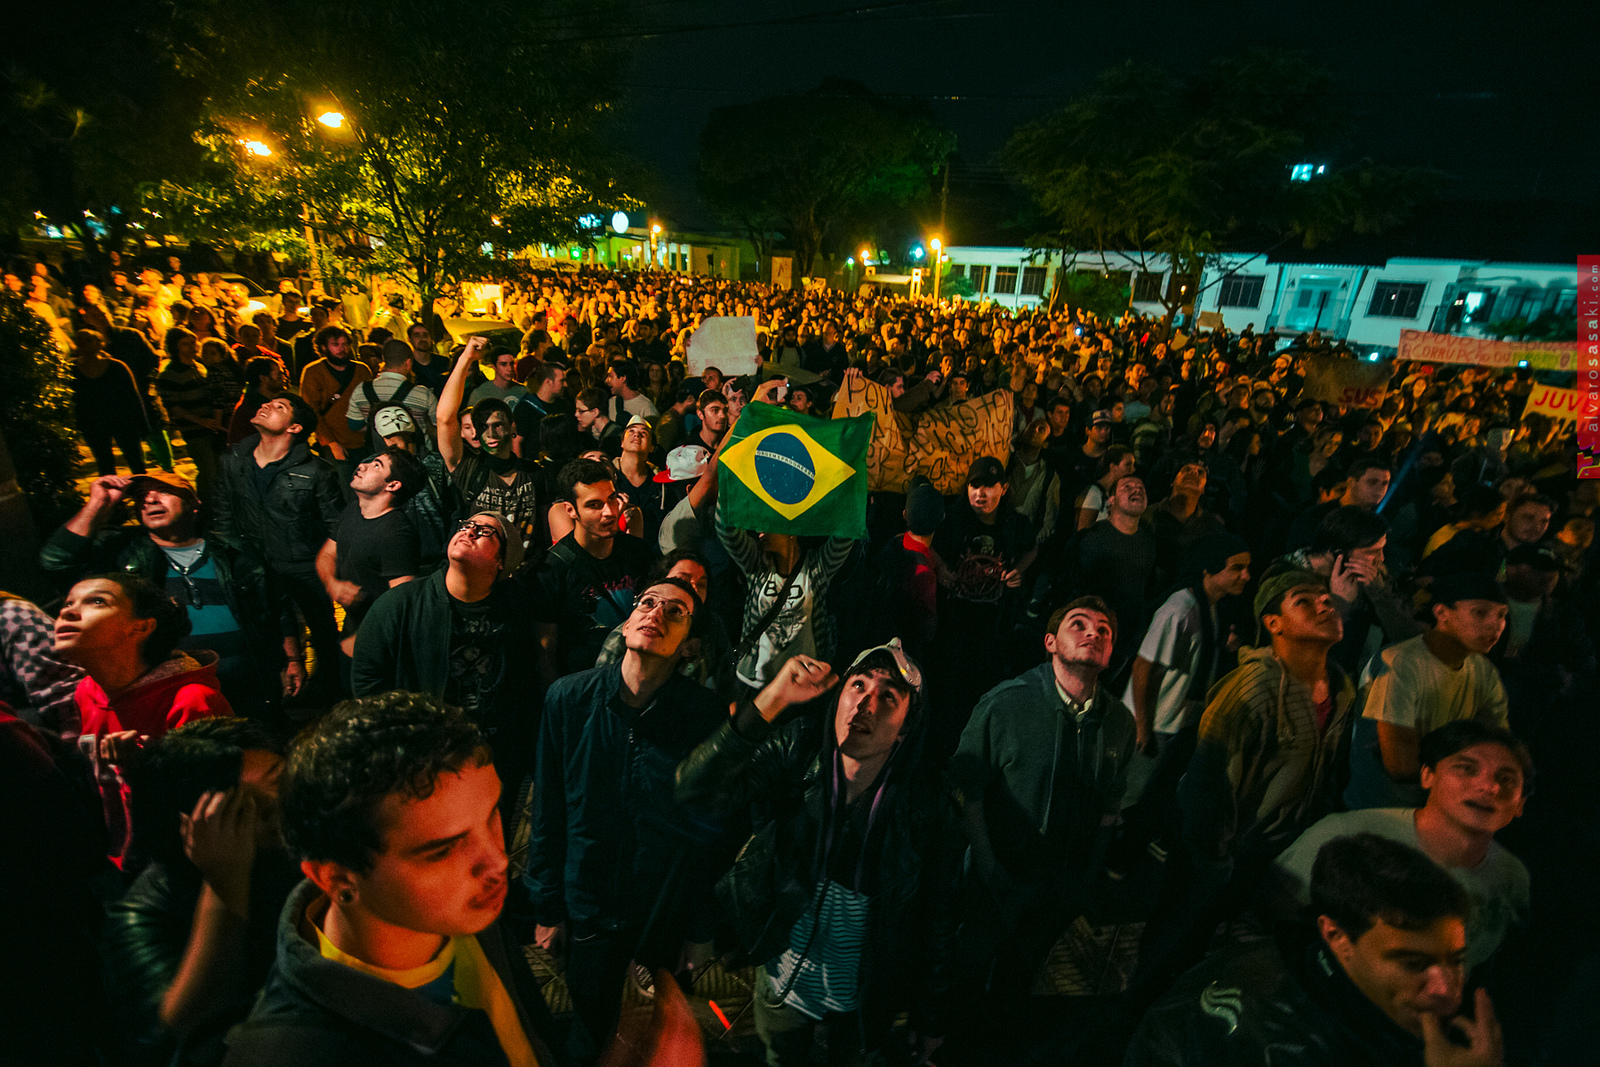 Nationwide protests in Brazil, June 2013 Image by: Alvaro Sasaki. Taken from: https://www.flickr.com/photos/alvarosasaki/11224424003 